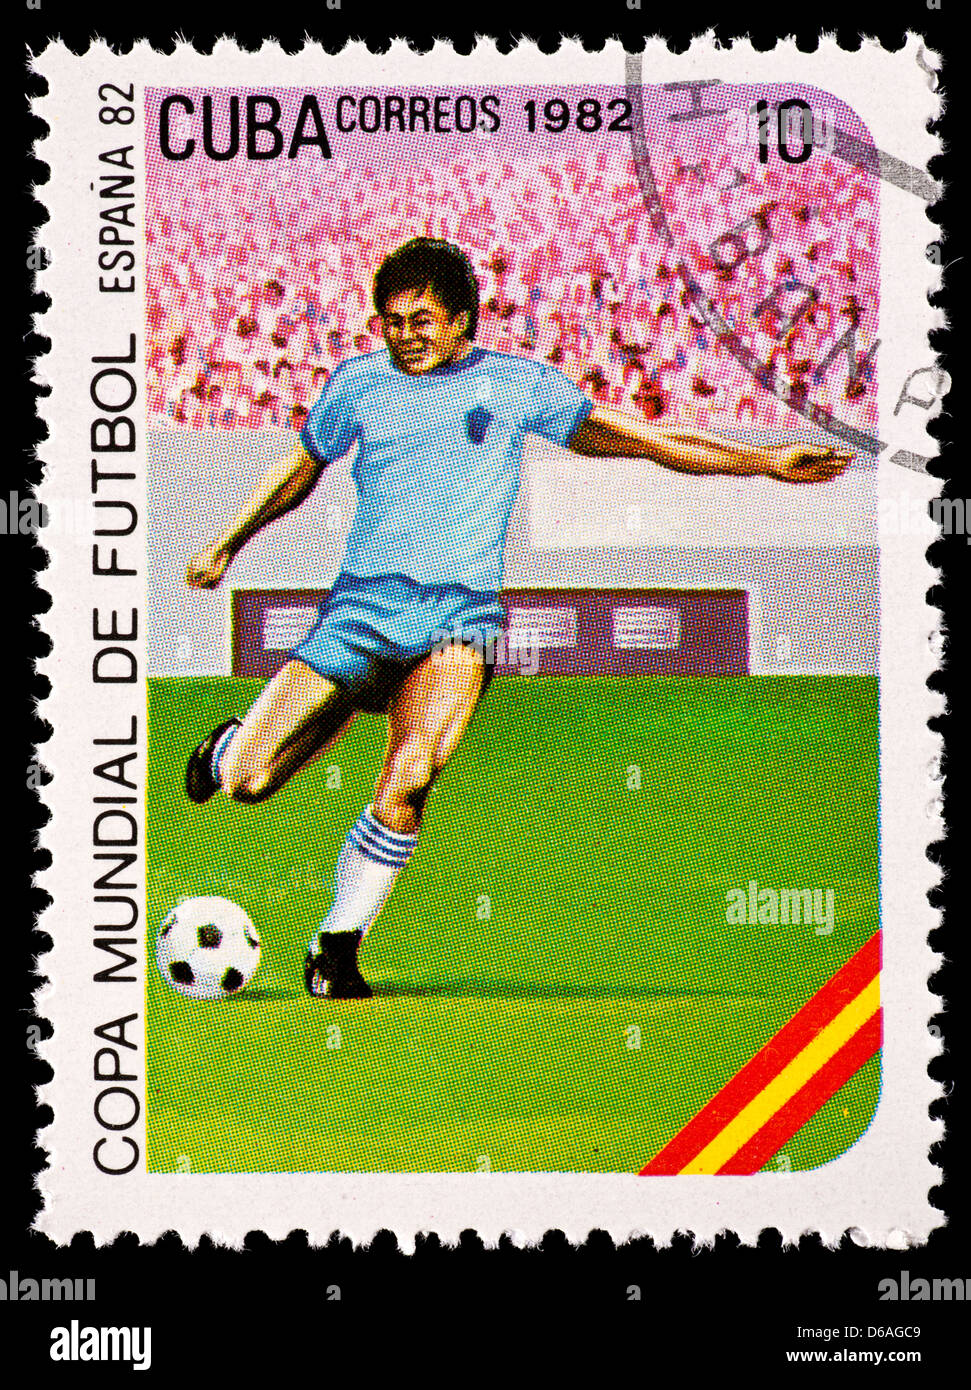 Timbre-poste de Cuba représentant un joueur de football, émis pour la Coupe du Monde 1982 en Espagne. Banque D'Images